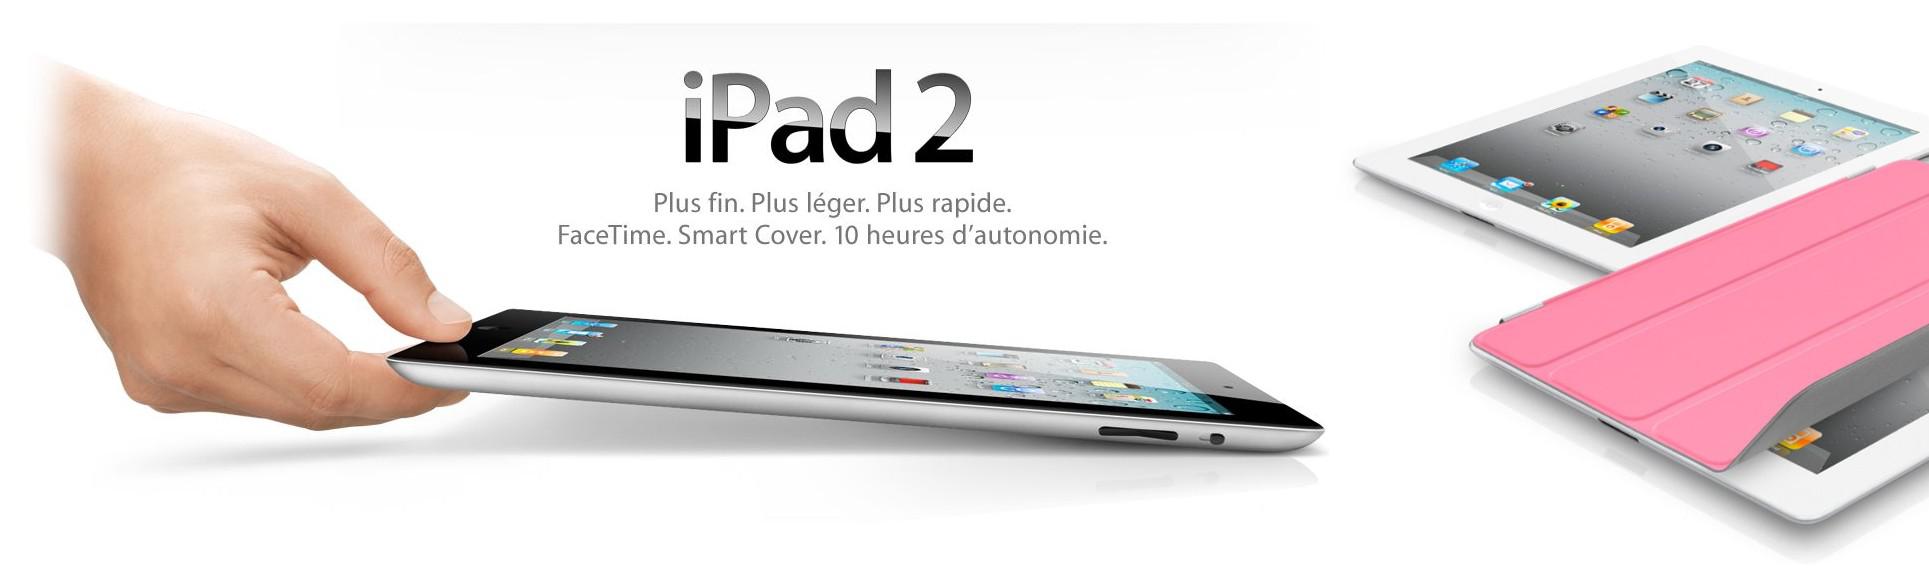 ipad2 smart cover oosgame weebeetroc [actu] iPad 2, Quelles nouveautés pour la tablette Apple